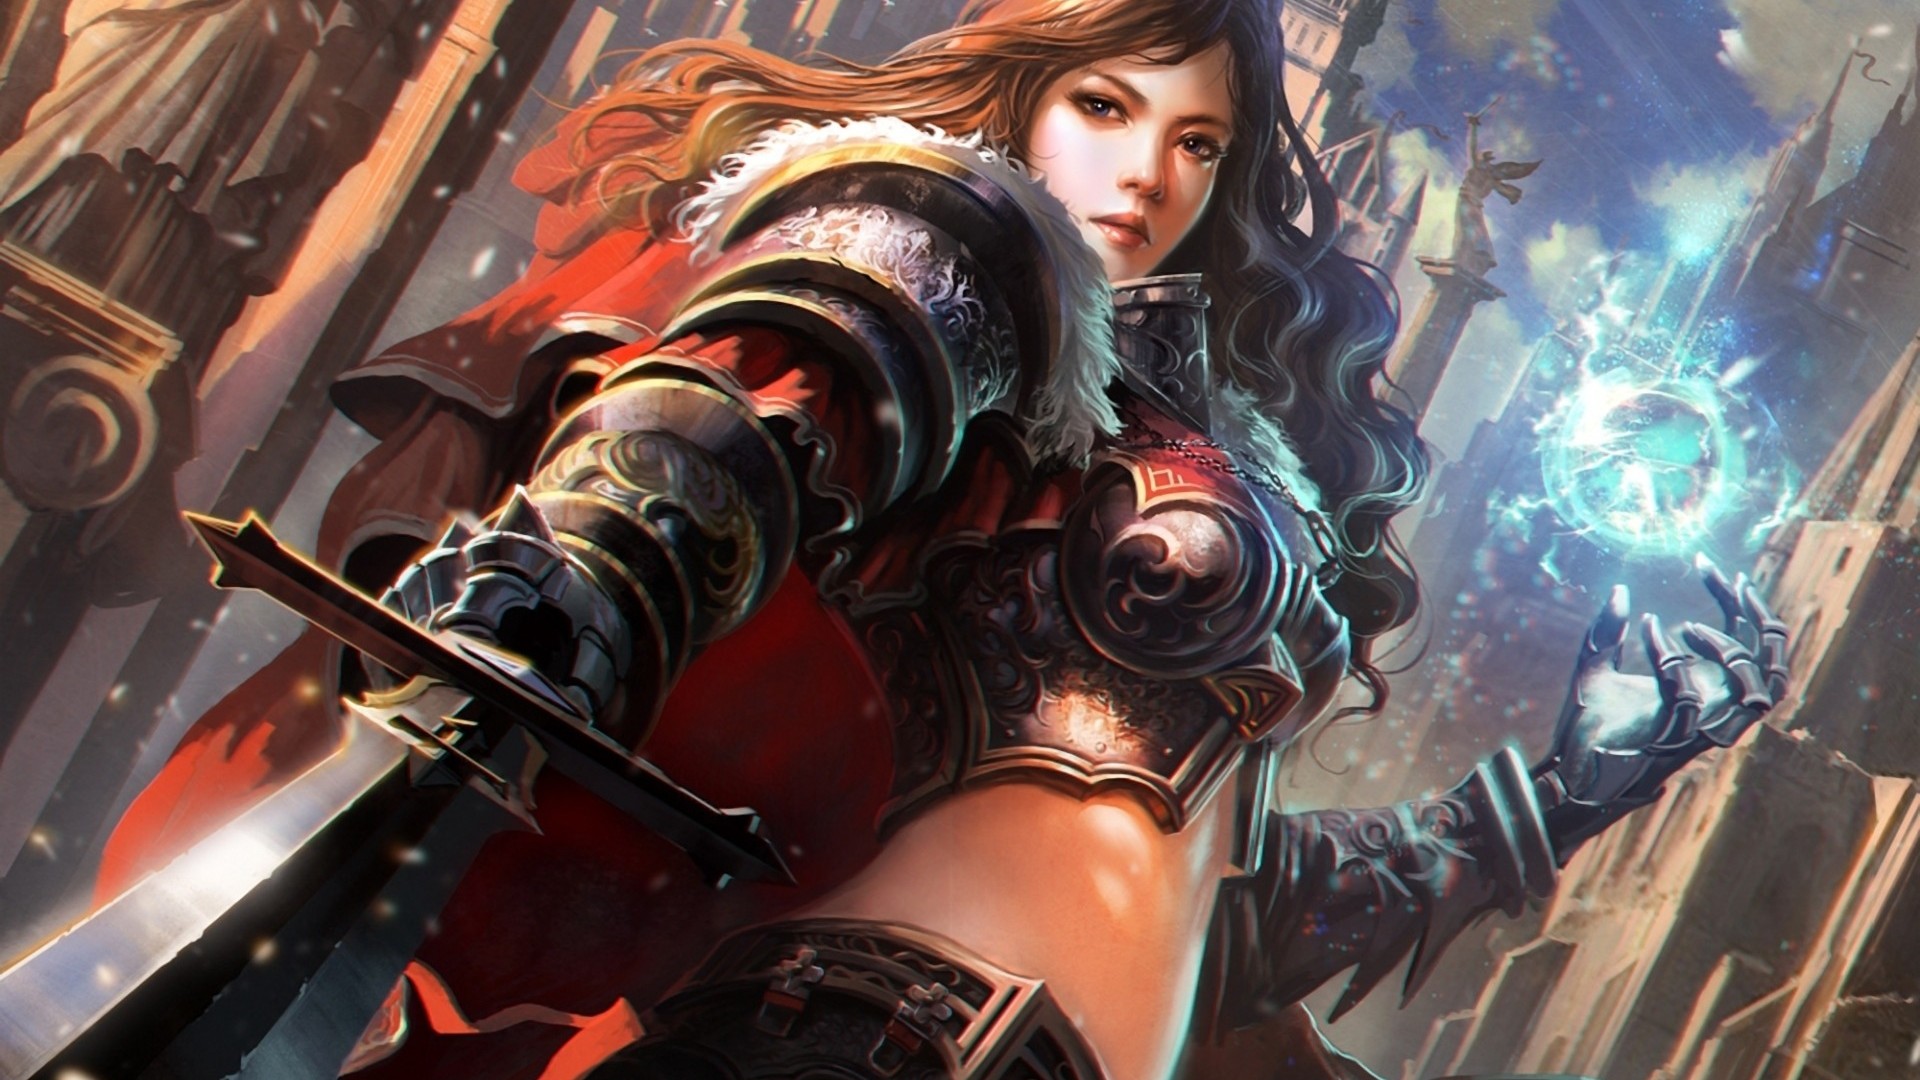 mujer guerrera fondo de pantalla,juego de acción y aventura,cg artwork,juego de pc,ilustración,cabello negro